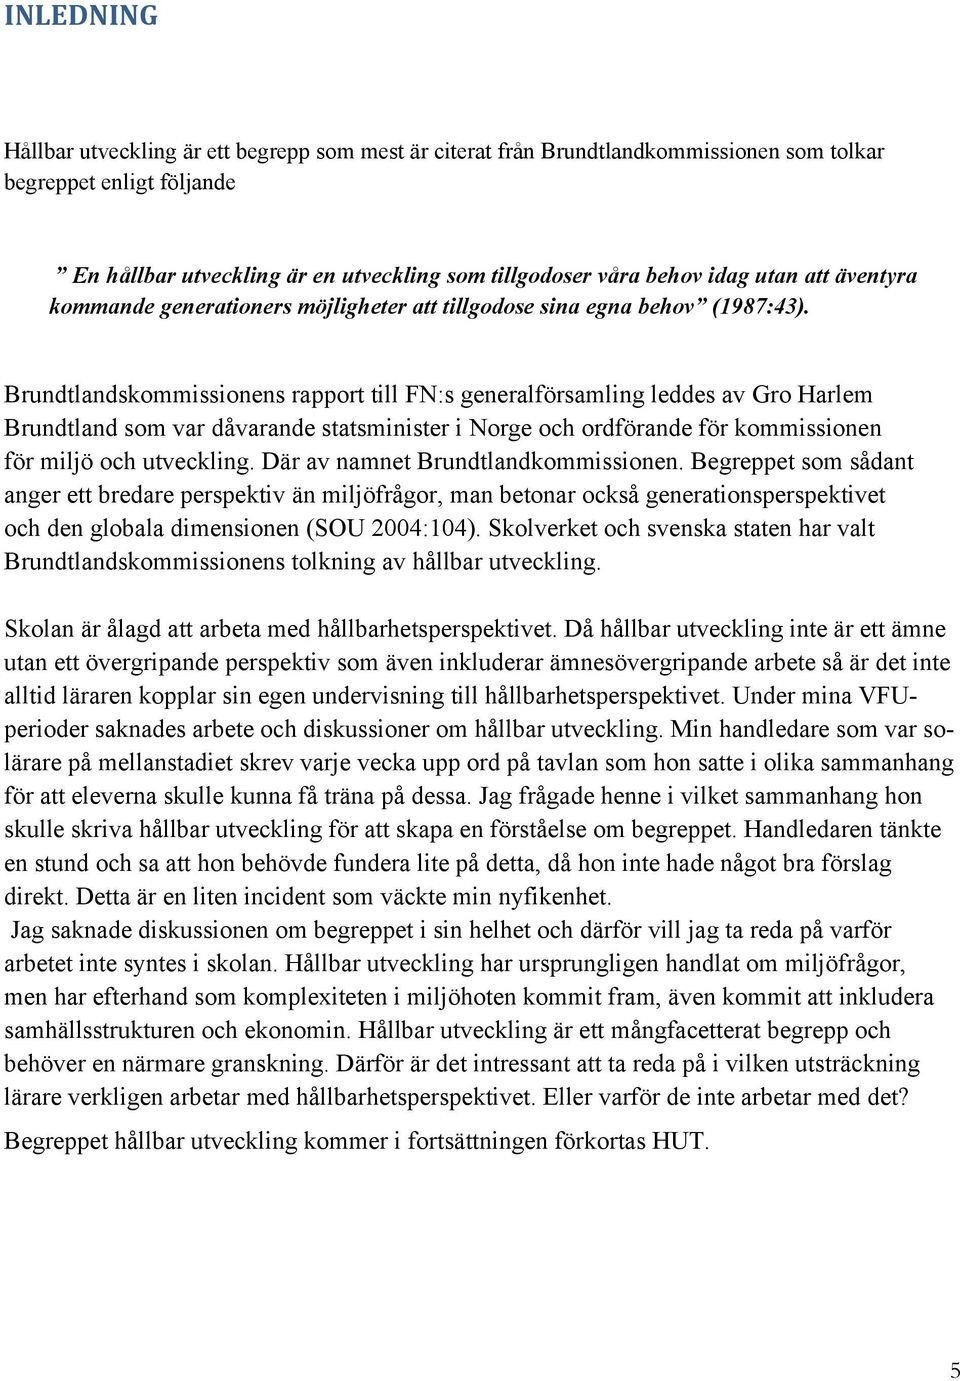 Brundtlandskommissionens rapport till FN:s generalförsamling leddes av Gro Harlem Brundtland som var dåvarande statsminister i Norge och ordförande för kommissionen för miljö och utveckling.